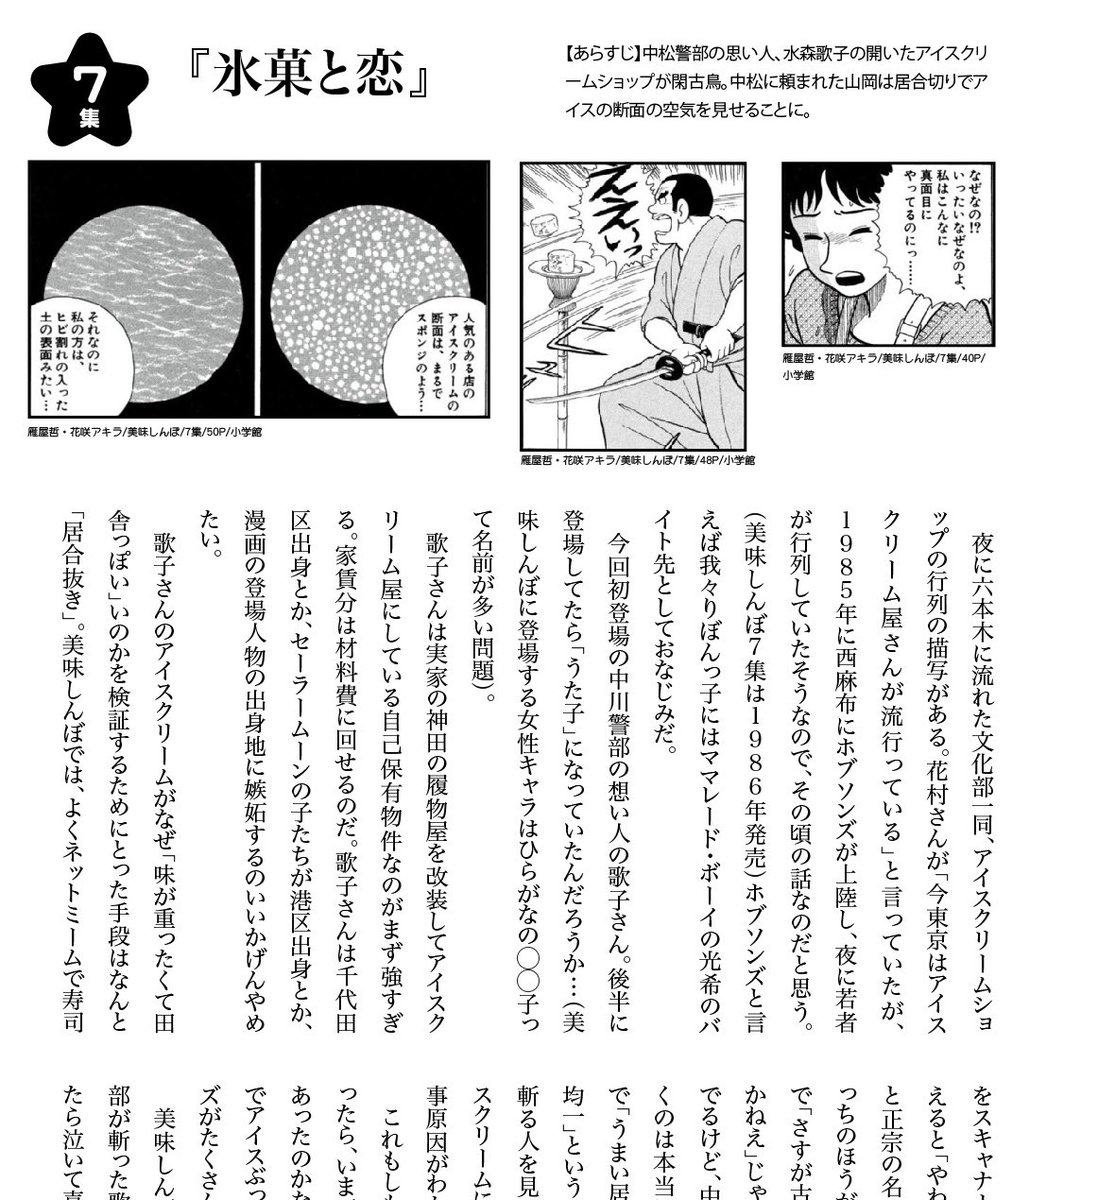 11月20(日)の文学フリマ、新刊出ます!ひたすら美味しんぼの好き回の感想を言いまくる美味しんぼ感想本です。

「美味しんぼの話をさせて!」42ページ
文フリ東京35「T-39」神保町クラブででお待ちしております〜!

#文学フリマ東京 
#文学フリマ 